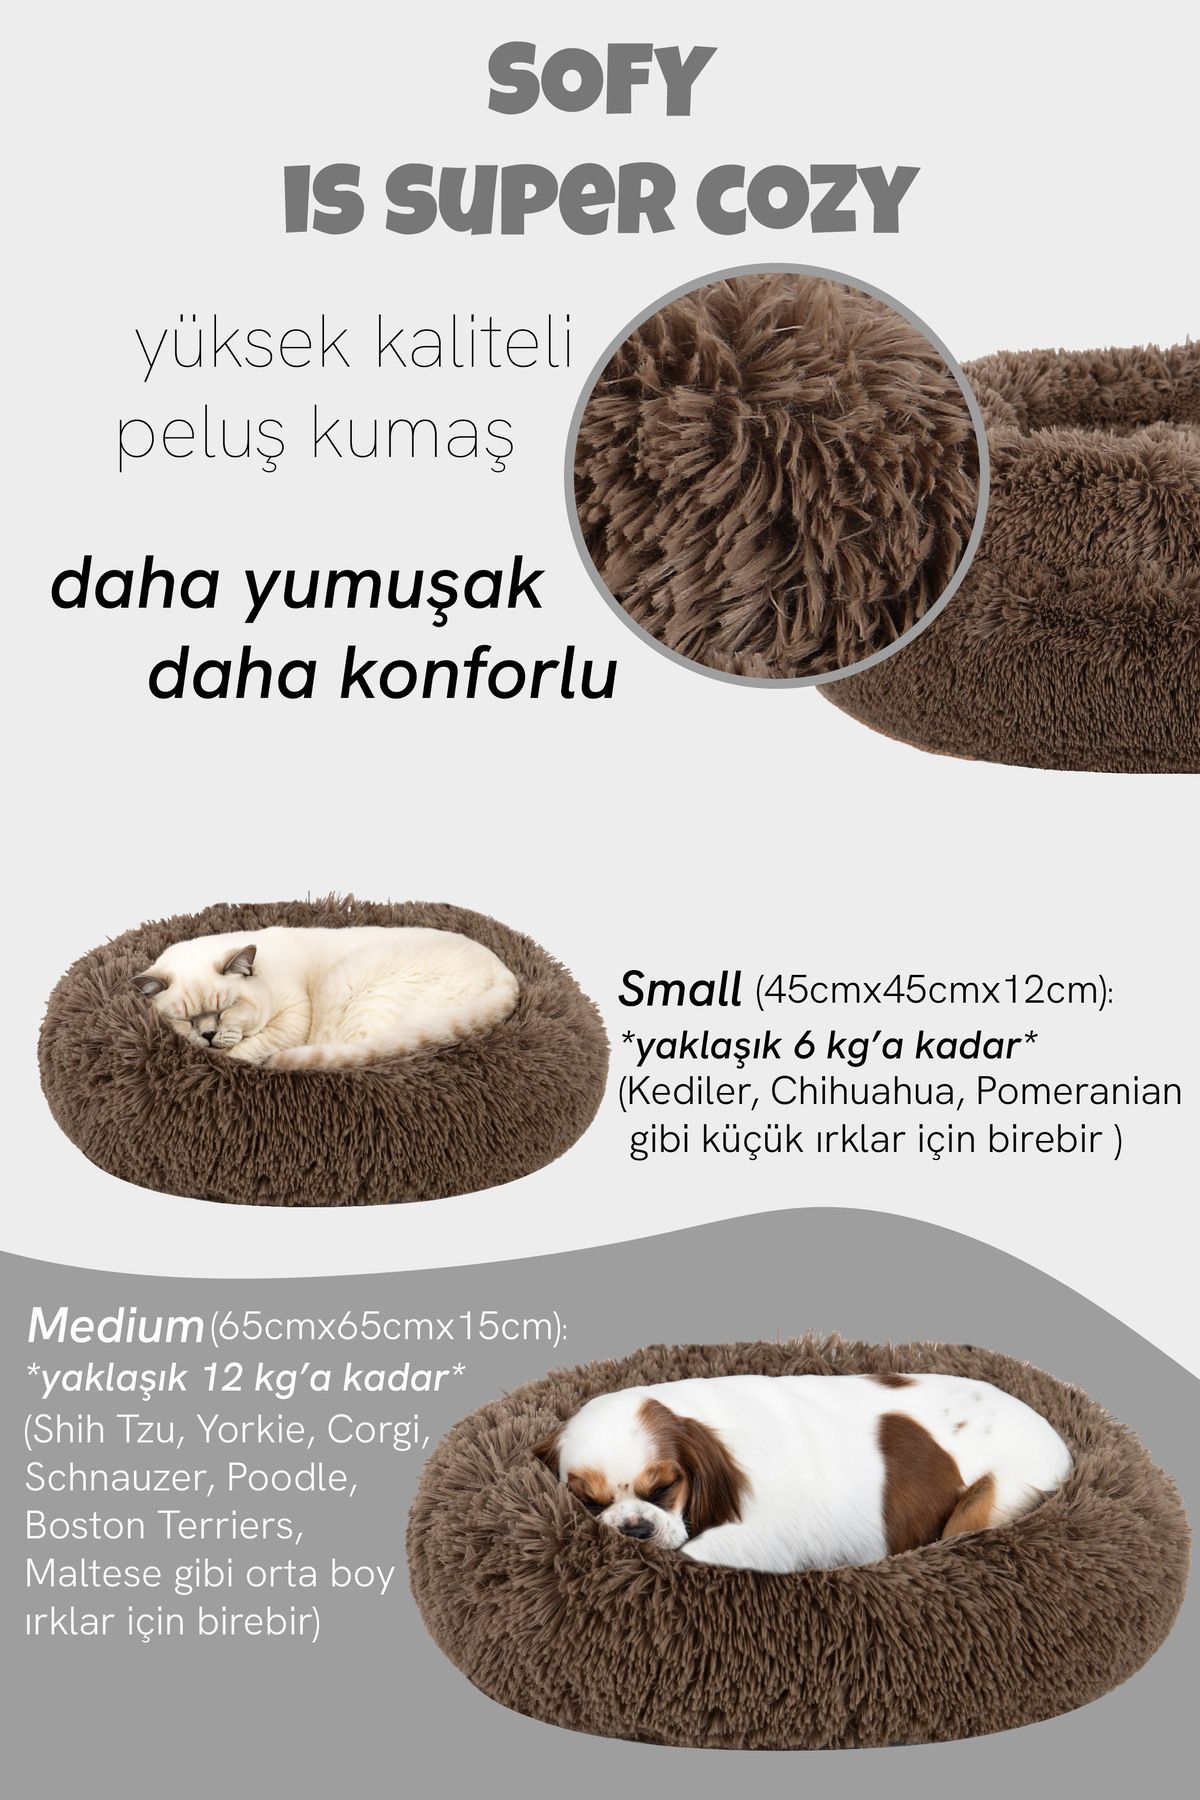 Jungolica Pet Products Sofy, Donut Şeklinde Sakinleştirici Etkili, Yüksek Kaliteli, Peluş Kedi Ve Köpek Yatağı